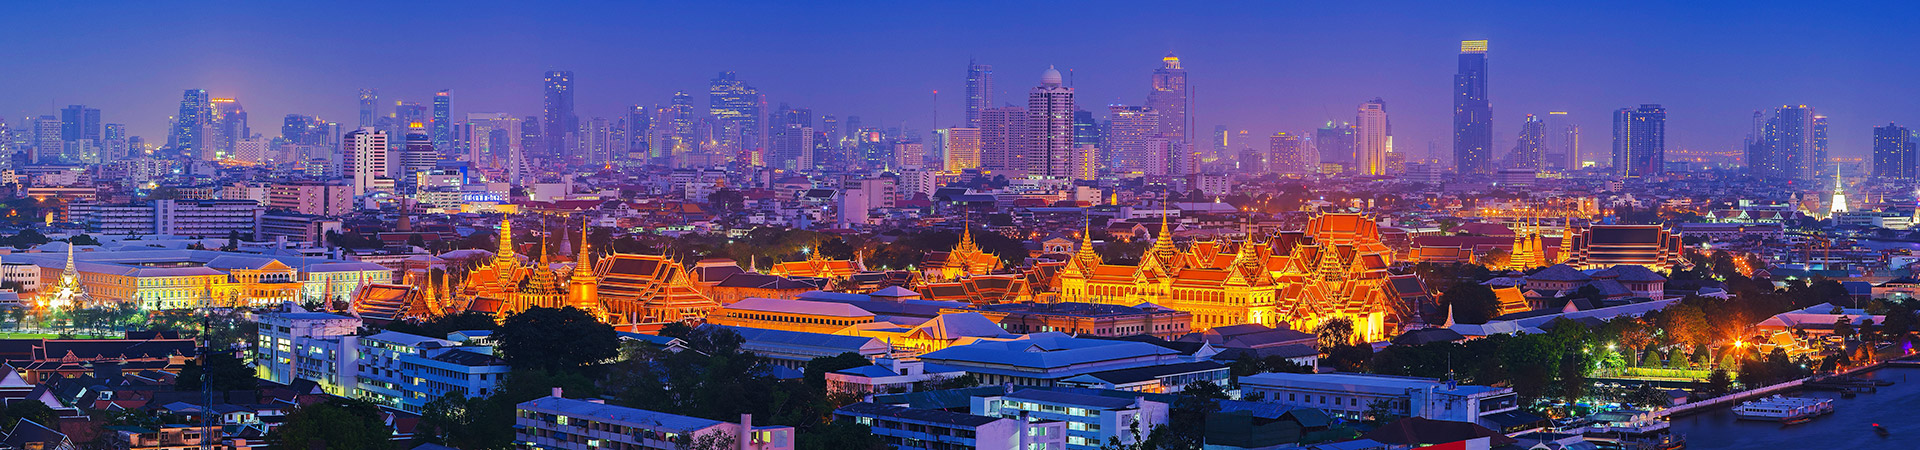 Bangkok-grand-palace